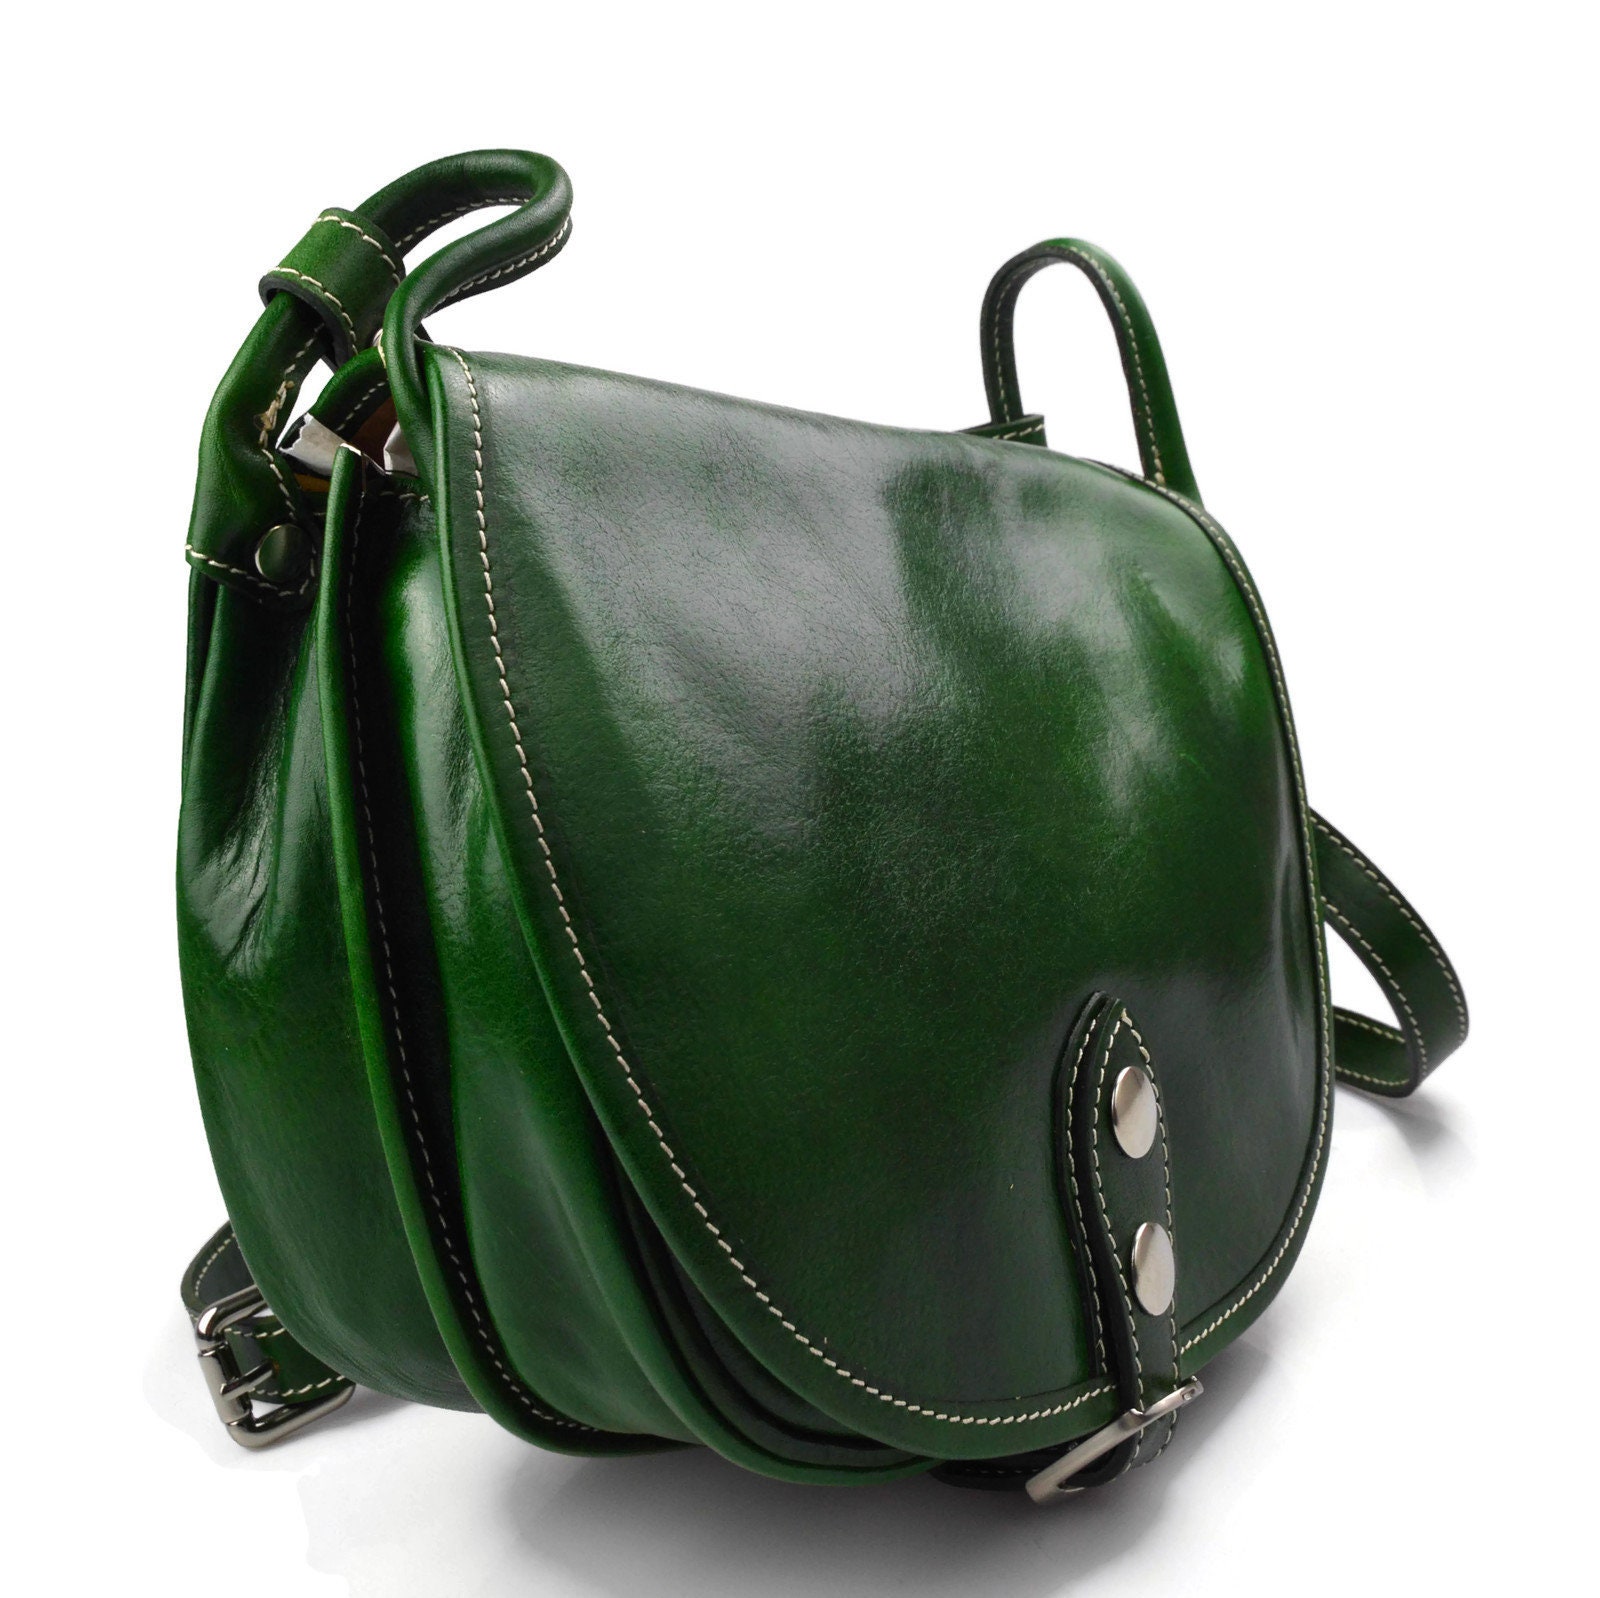 Women handbag leather bag clutch hobo bag shoulder bag green | Etsy